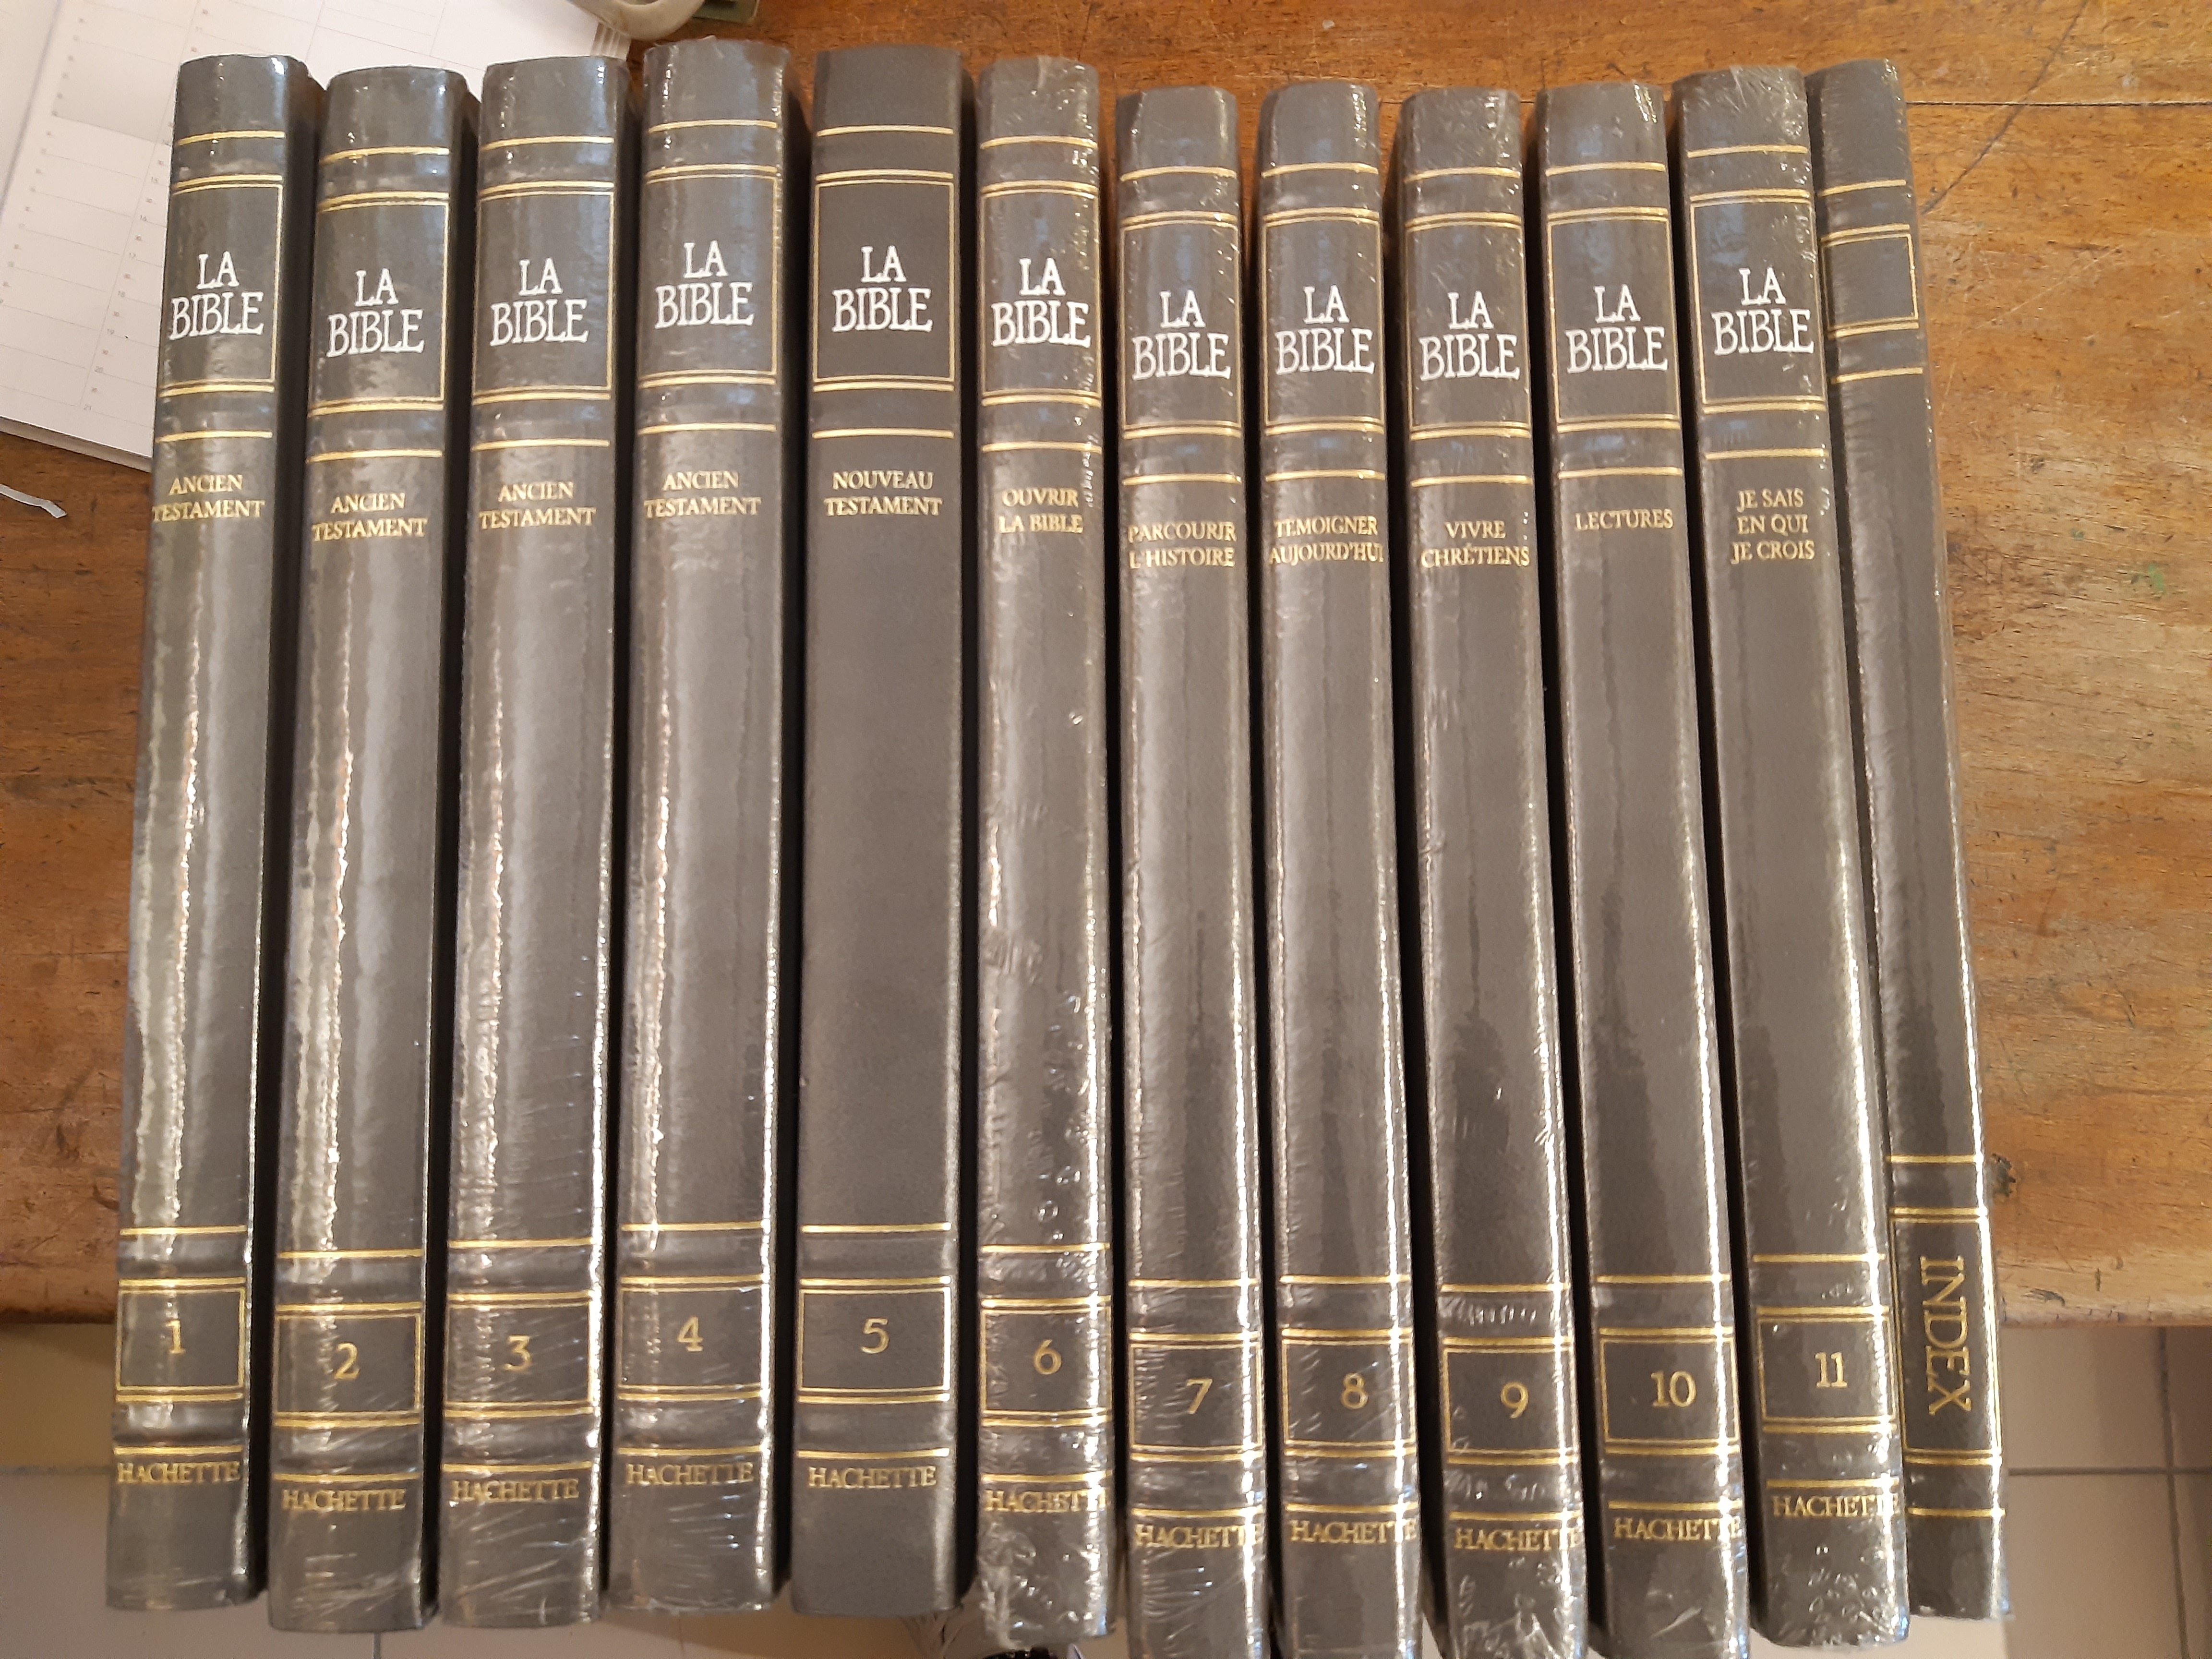 La Bible traduction oecumnique de la Bible en 11 tomes et 1 index.